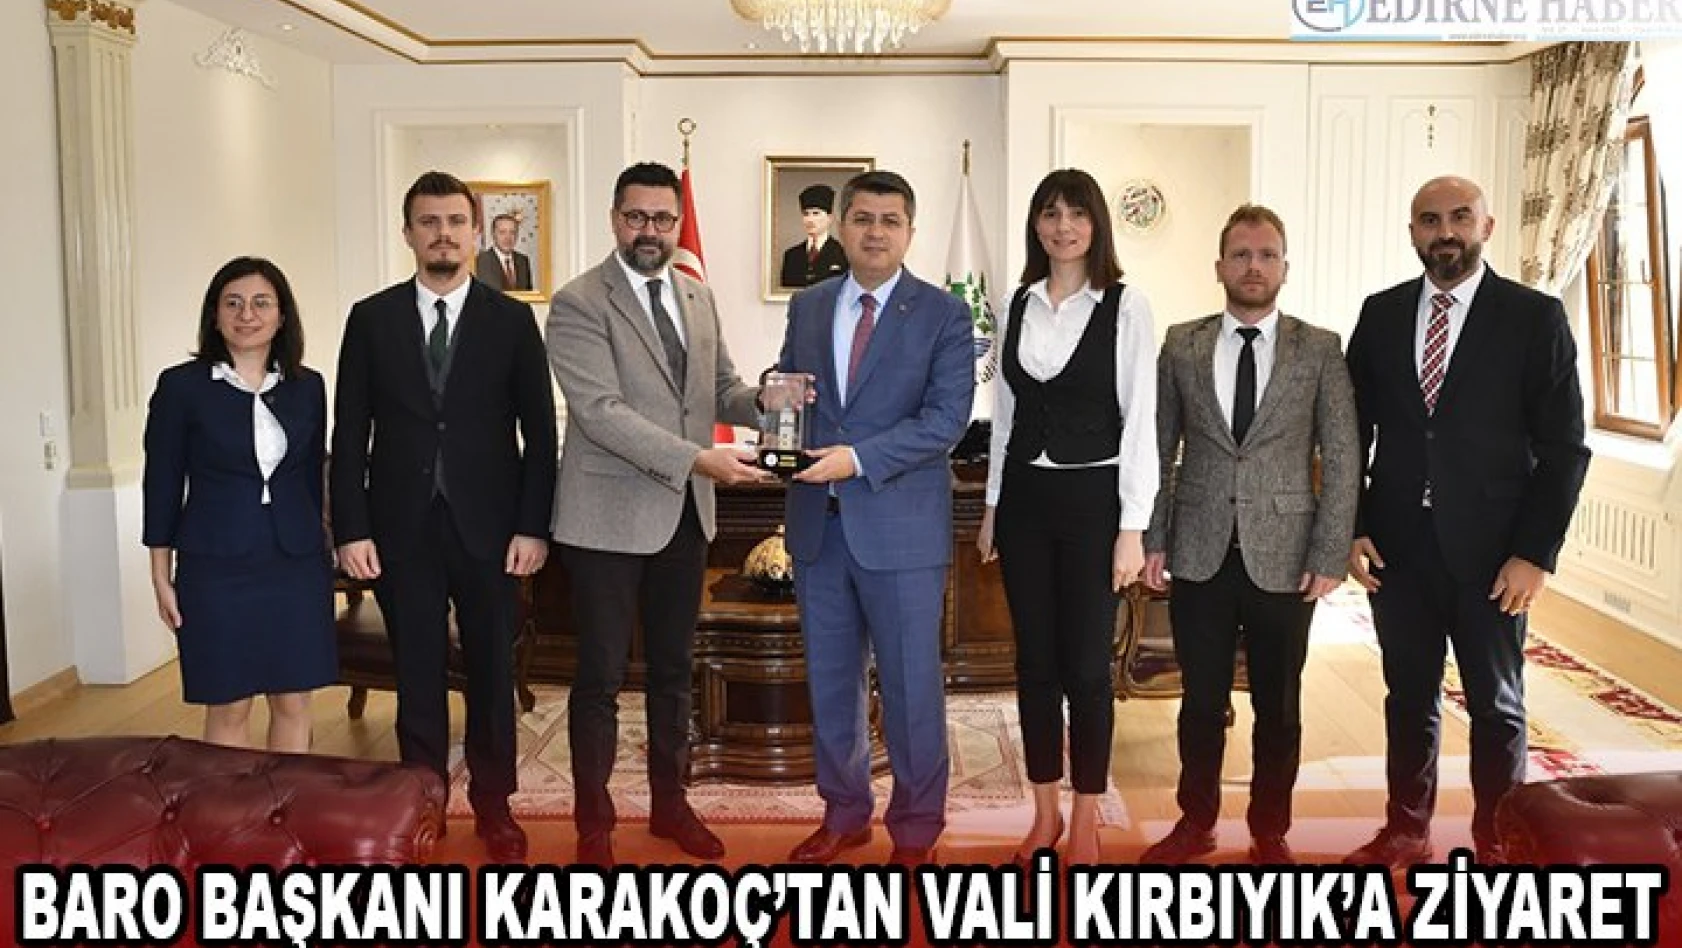 Baro Başkanı Karakoç'tan Vali Kırbıyık'a ziyaret